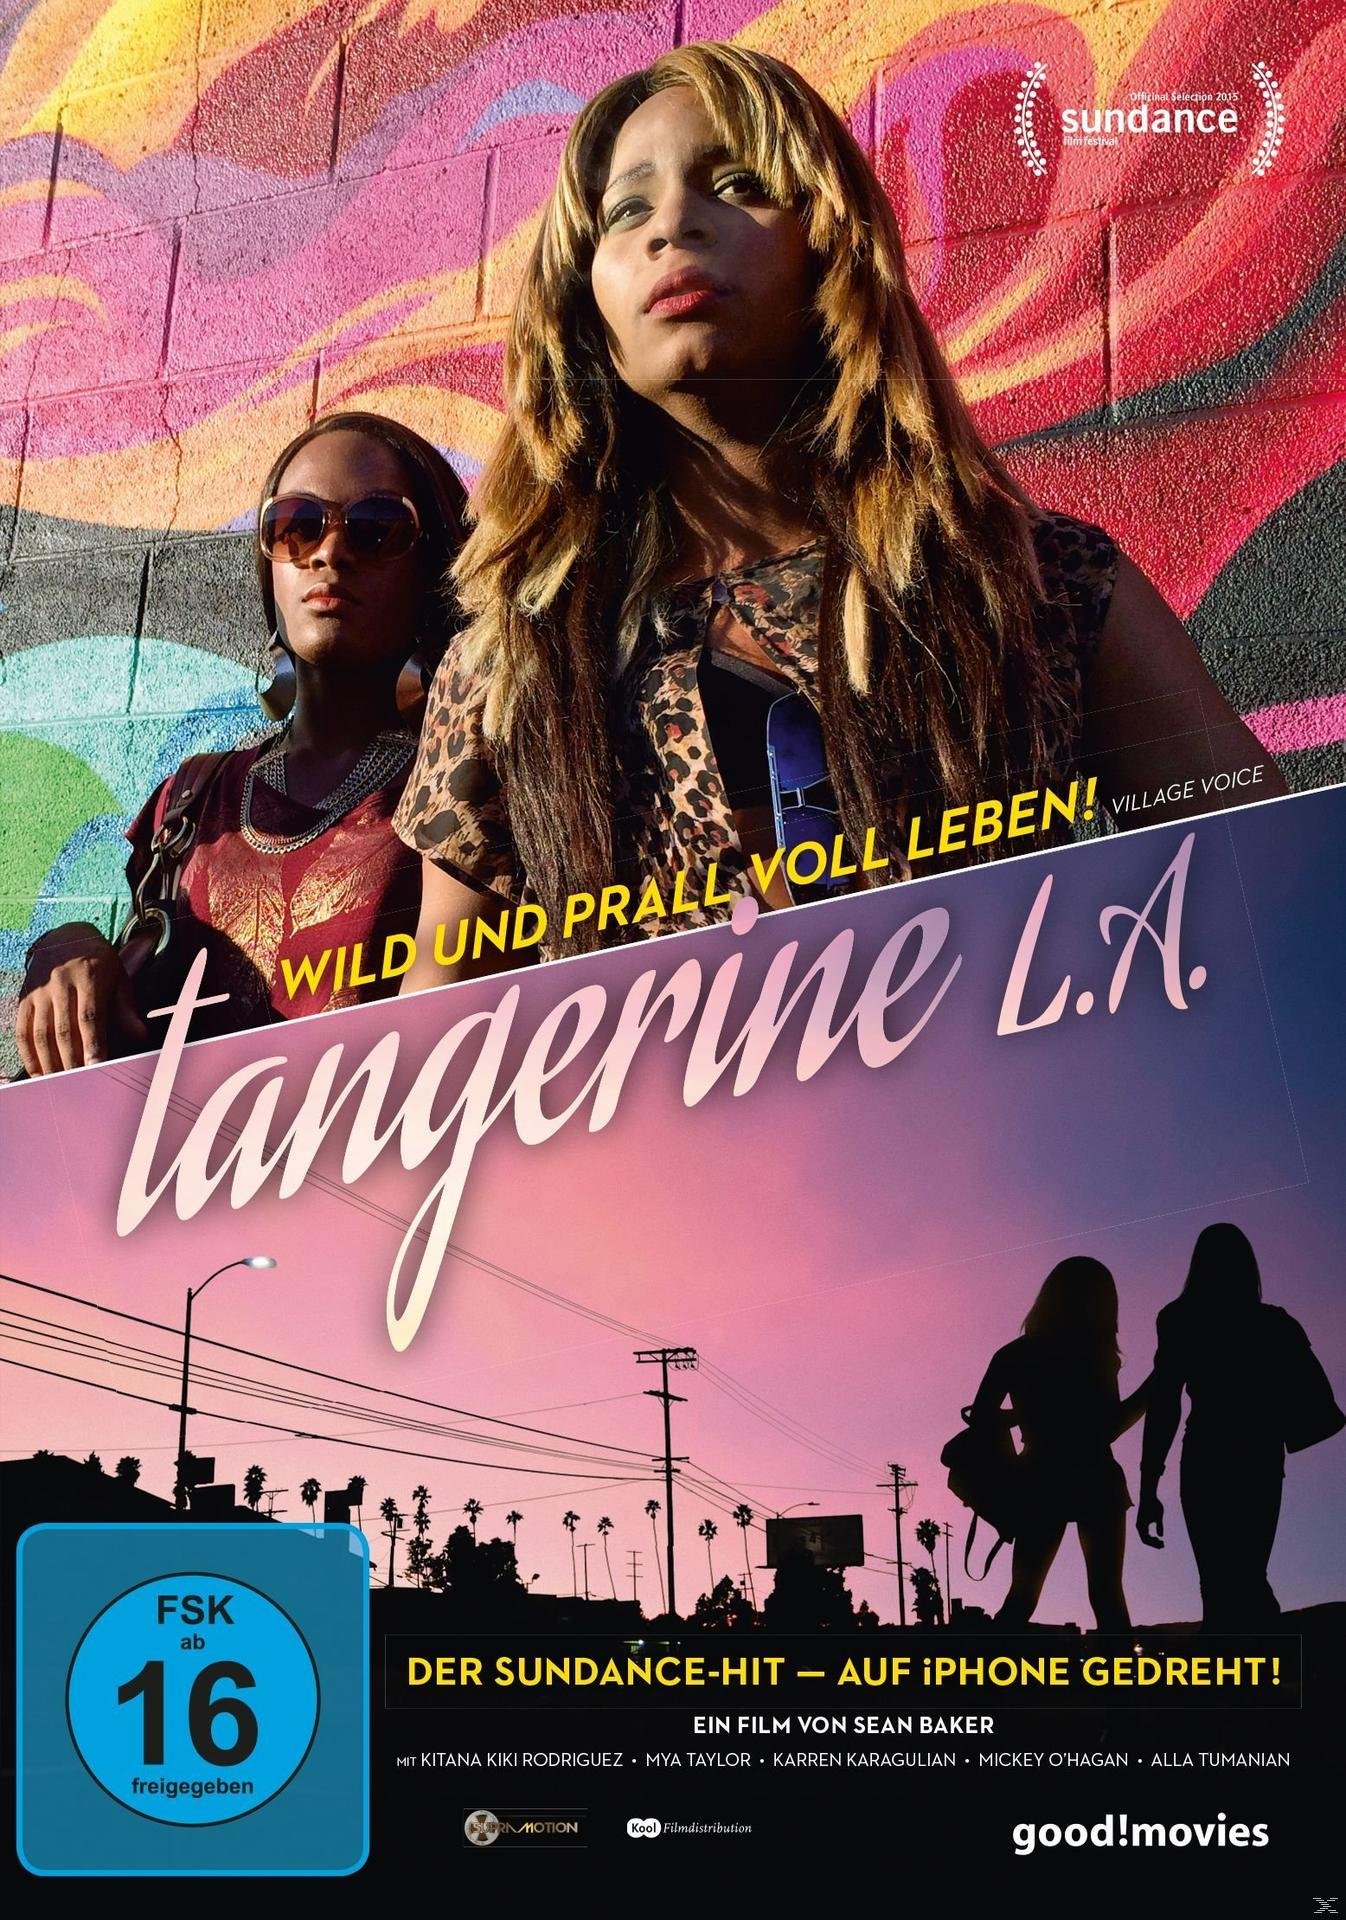 Tangerine DVD